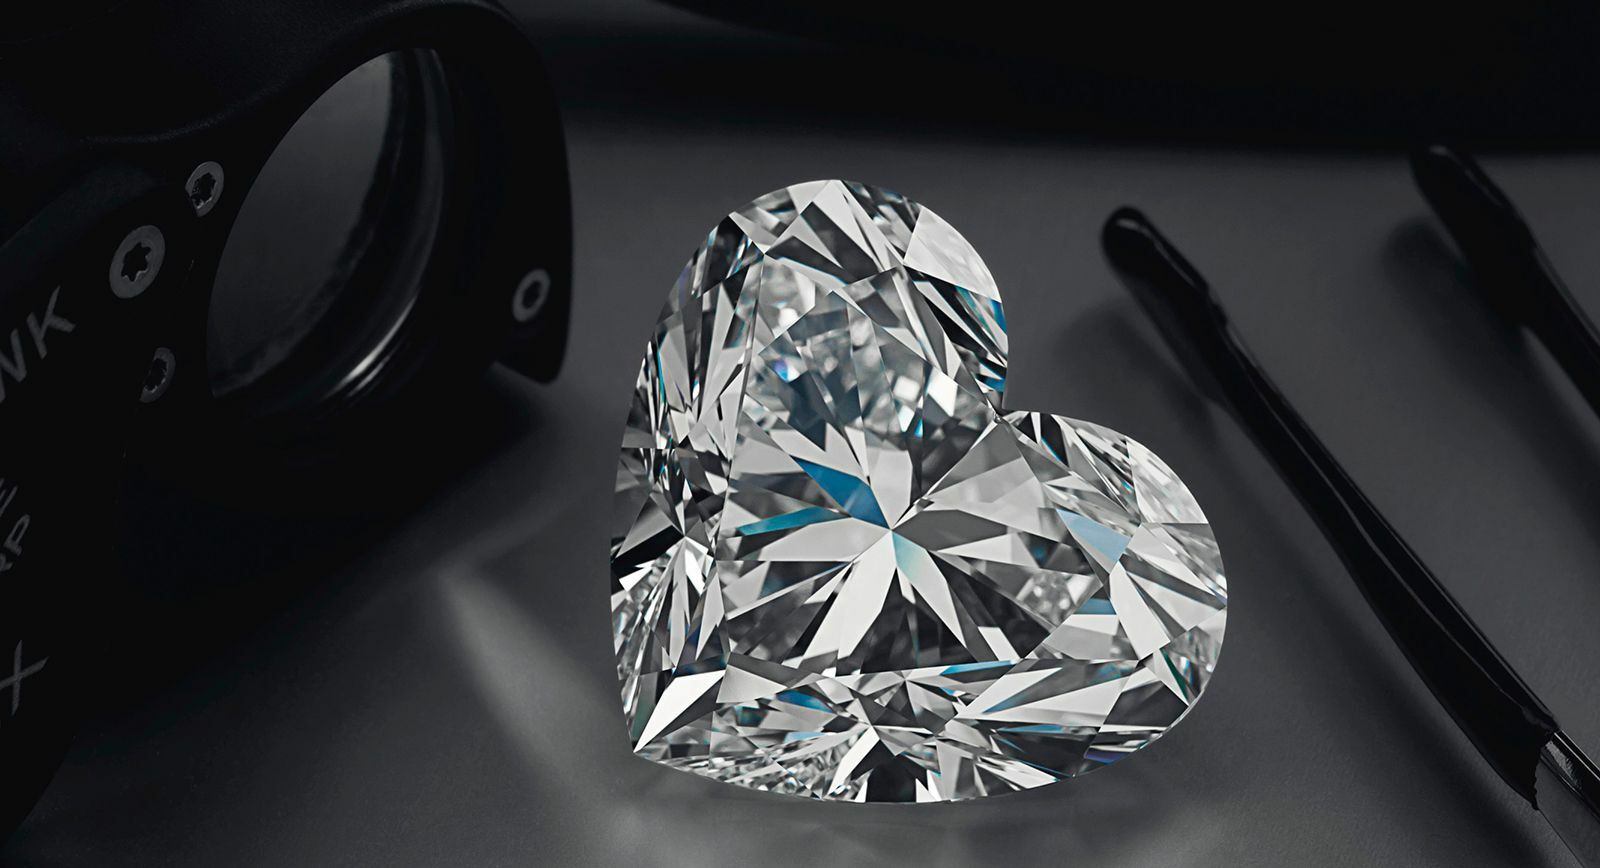 Largest ever "heart-cut" diamond La Legende put up for sale at Christie’s